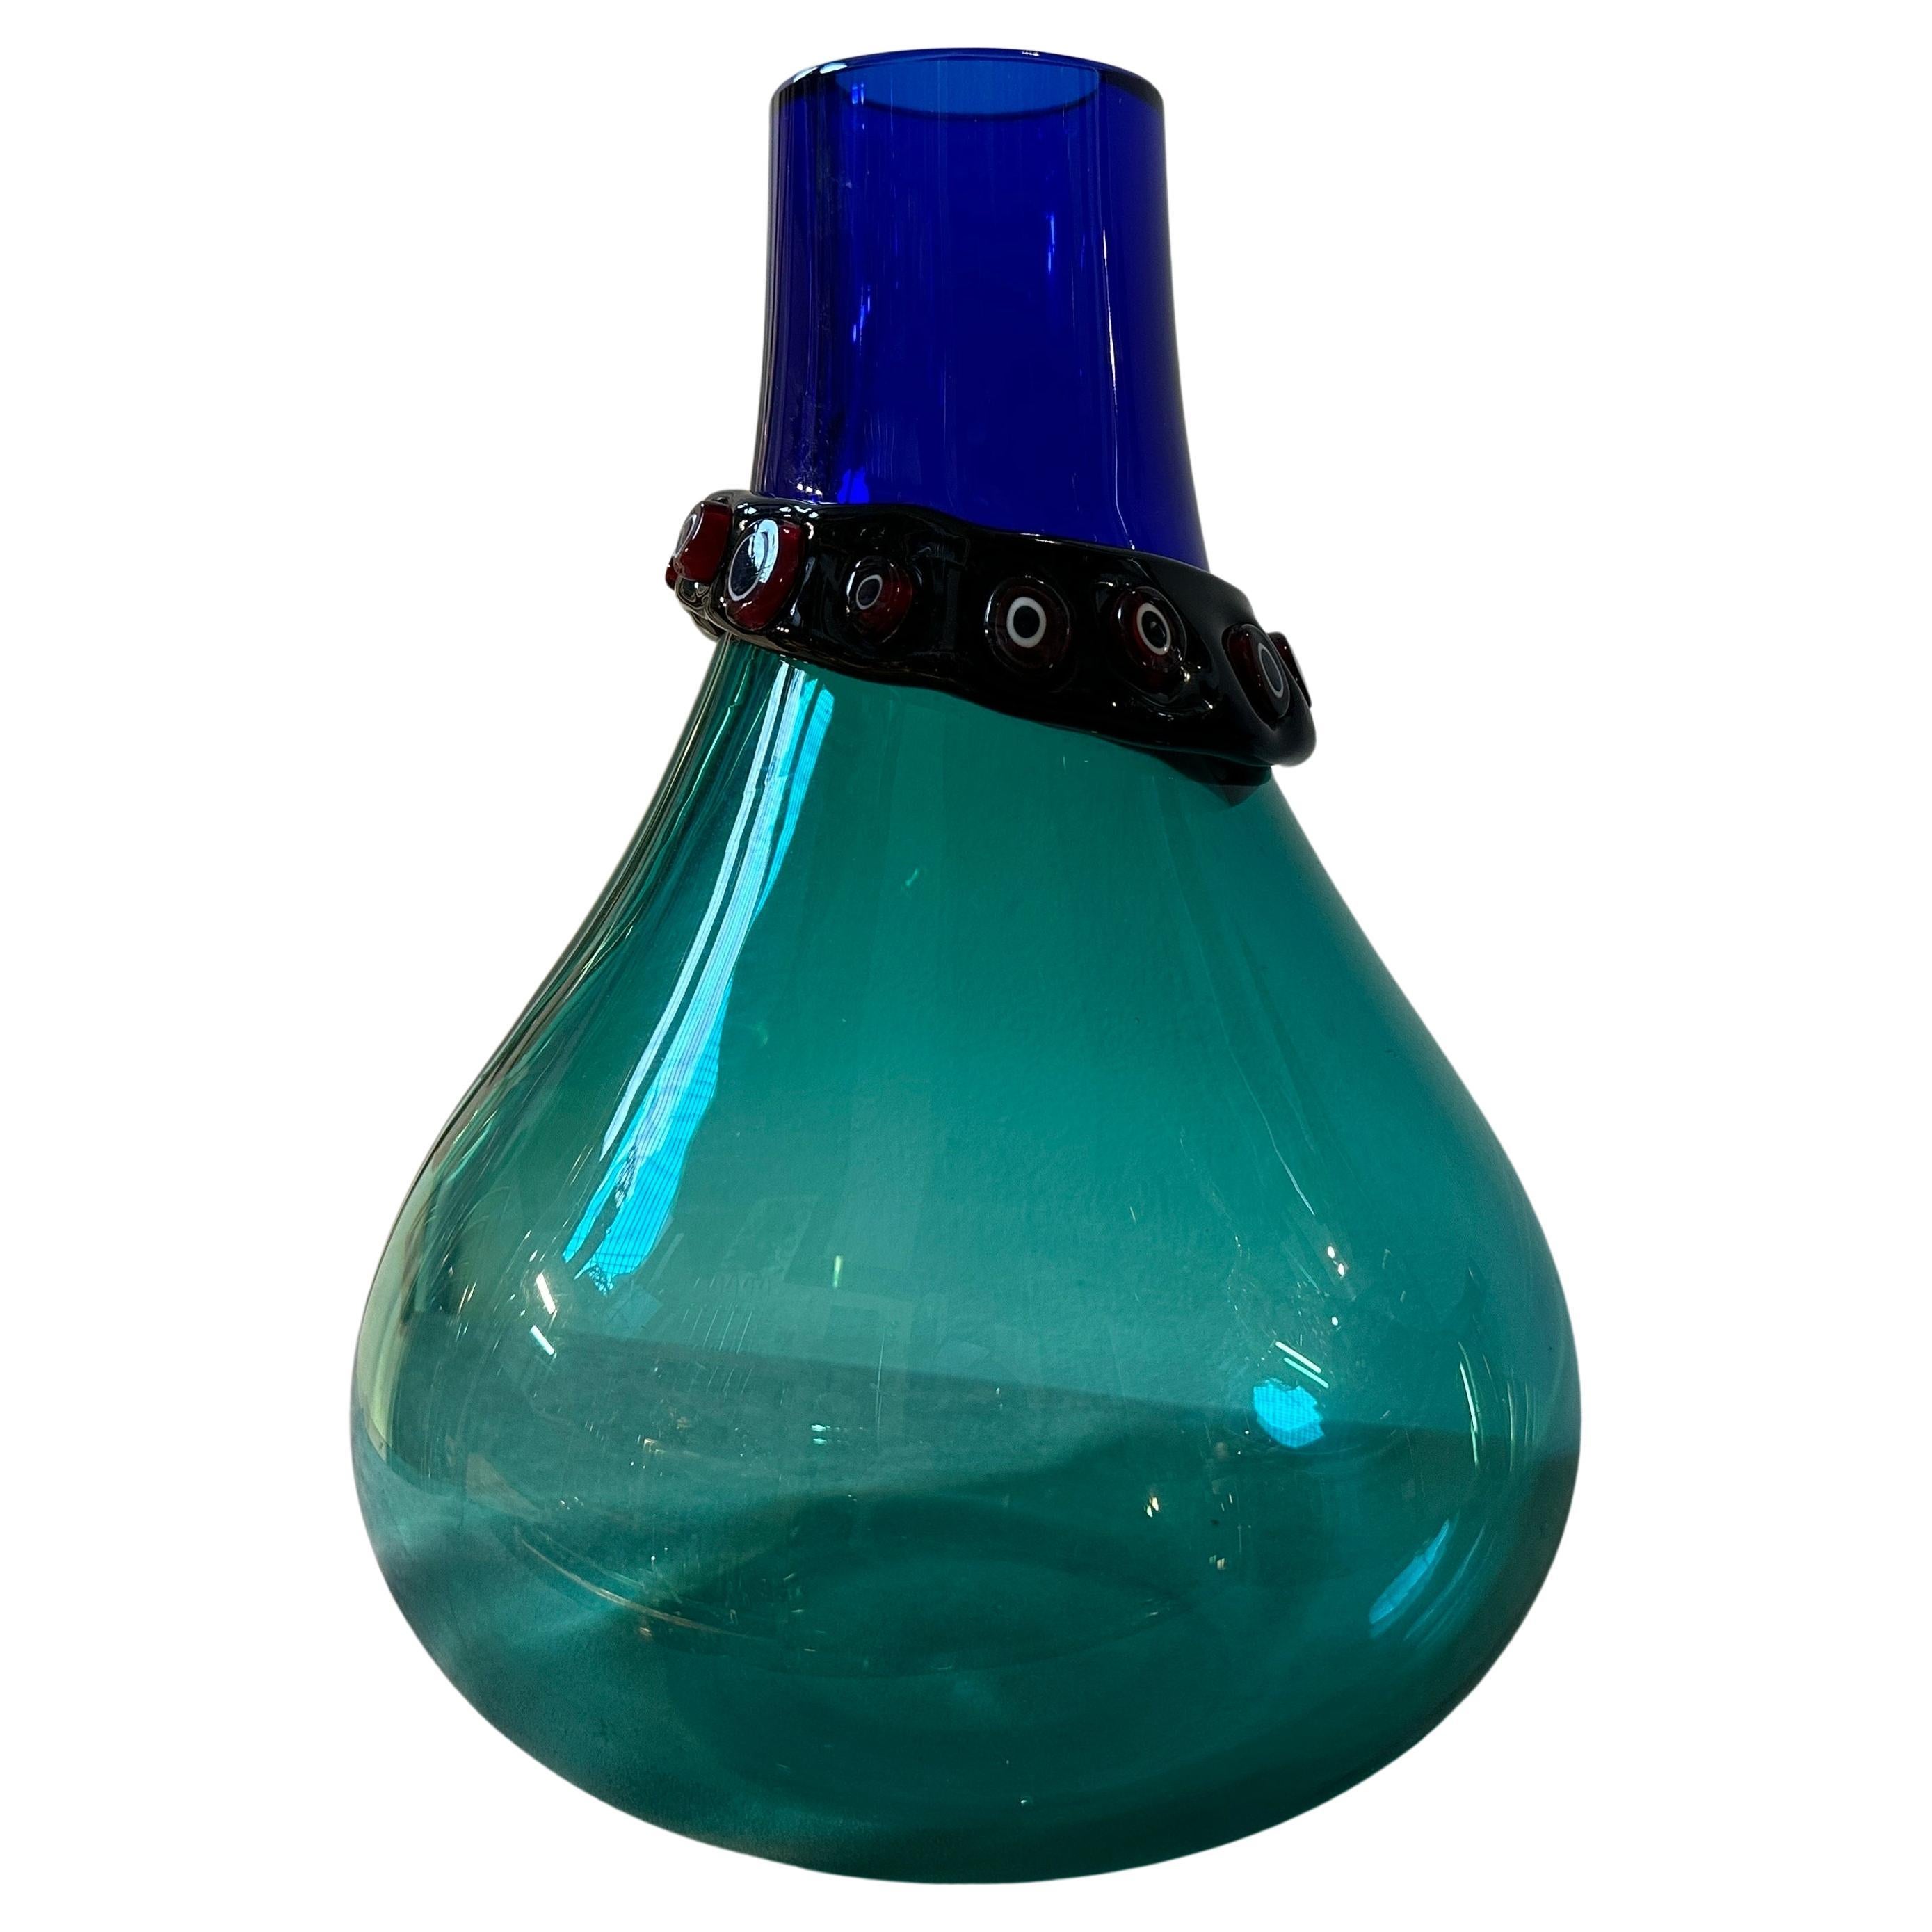 Ce vase en verre de Murano d'Alfredo Barbini est une pièce de collection très remarquable, qui incarne la beauté, l'innovation et l'art de la verrerie de Murano à cette époque. Alfredo Barbini était un artiste verrier et un designer de renom qui a